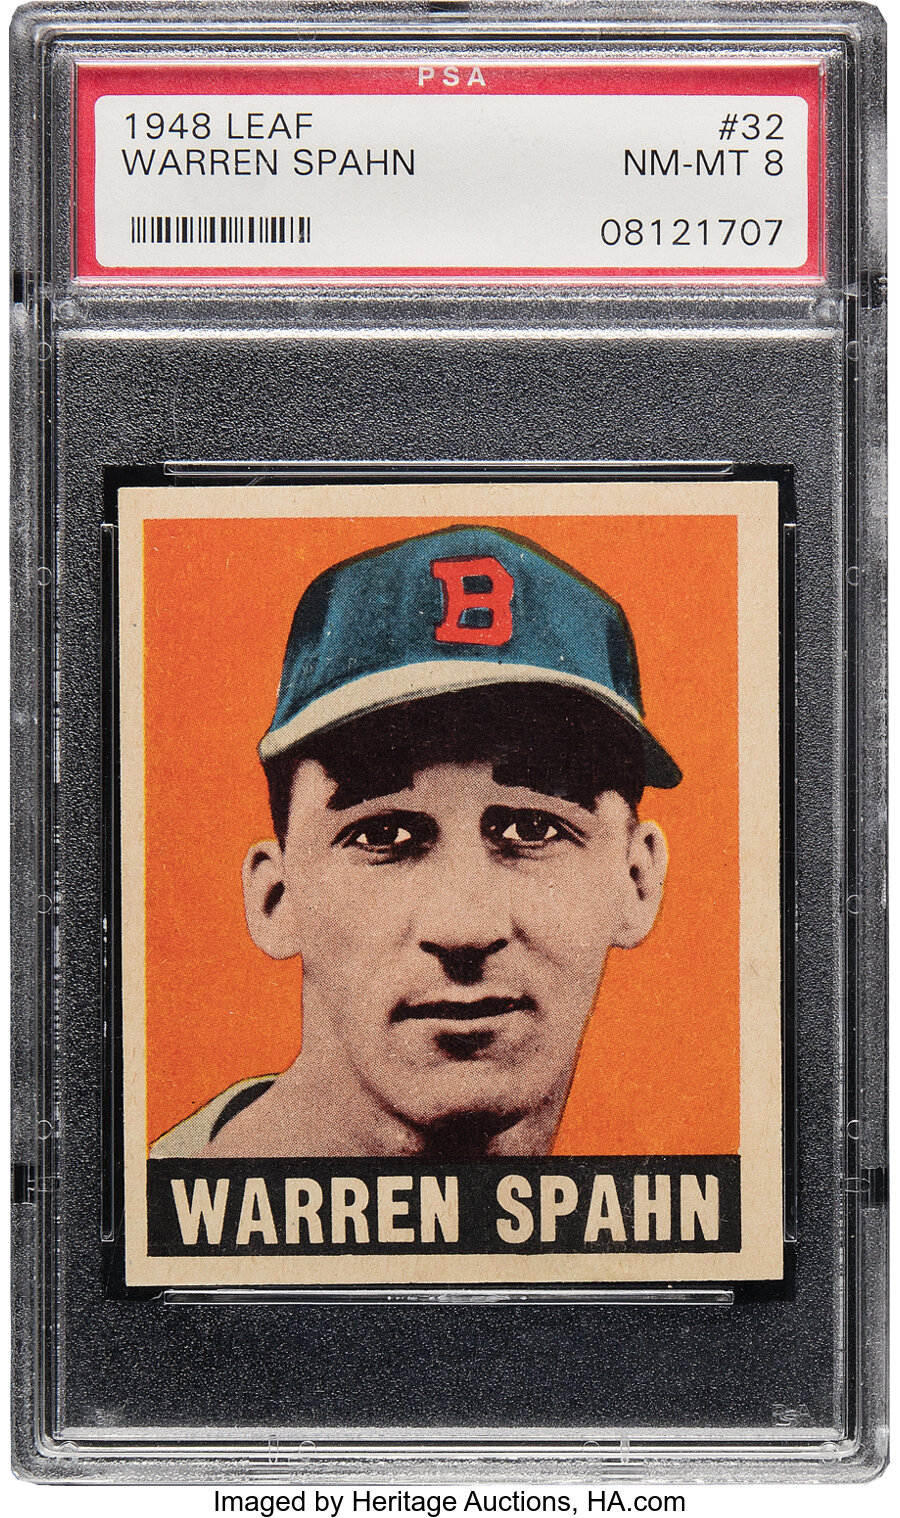 1948 Leaf Warren Spahn Rookie #32 PSA NM-MT 8